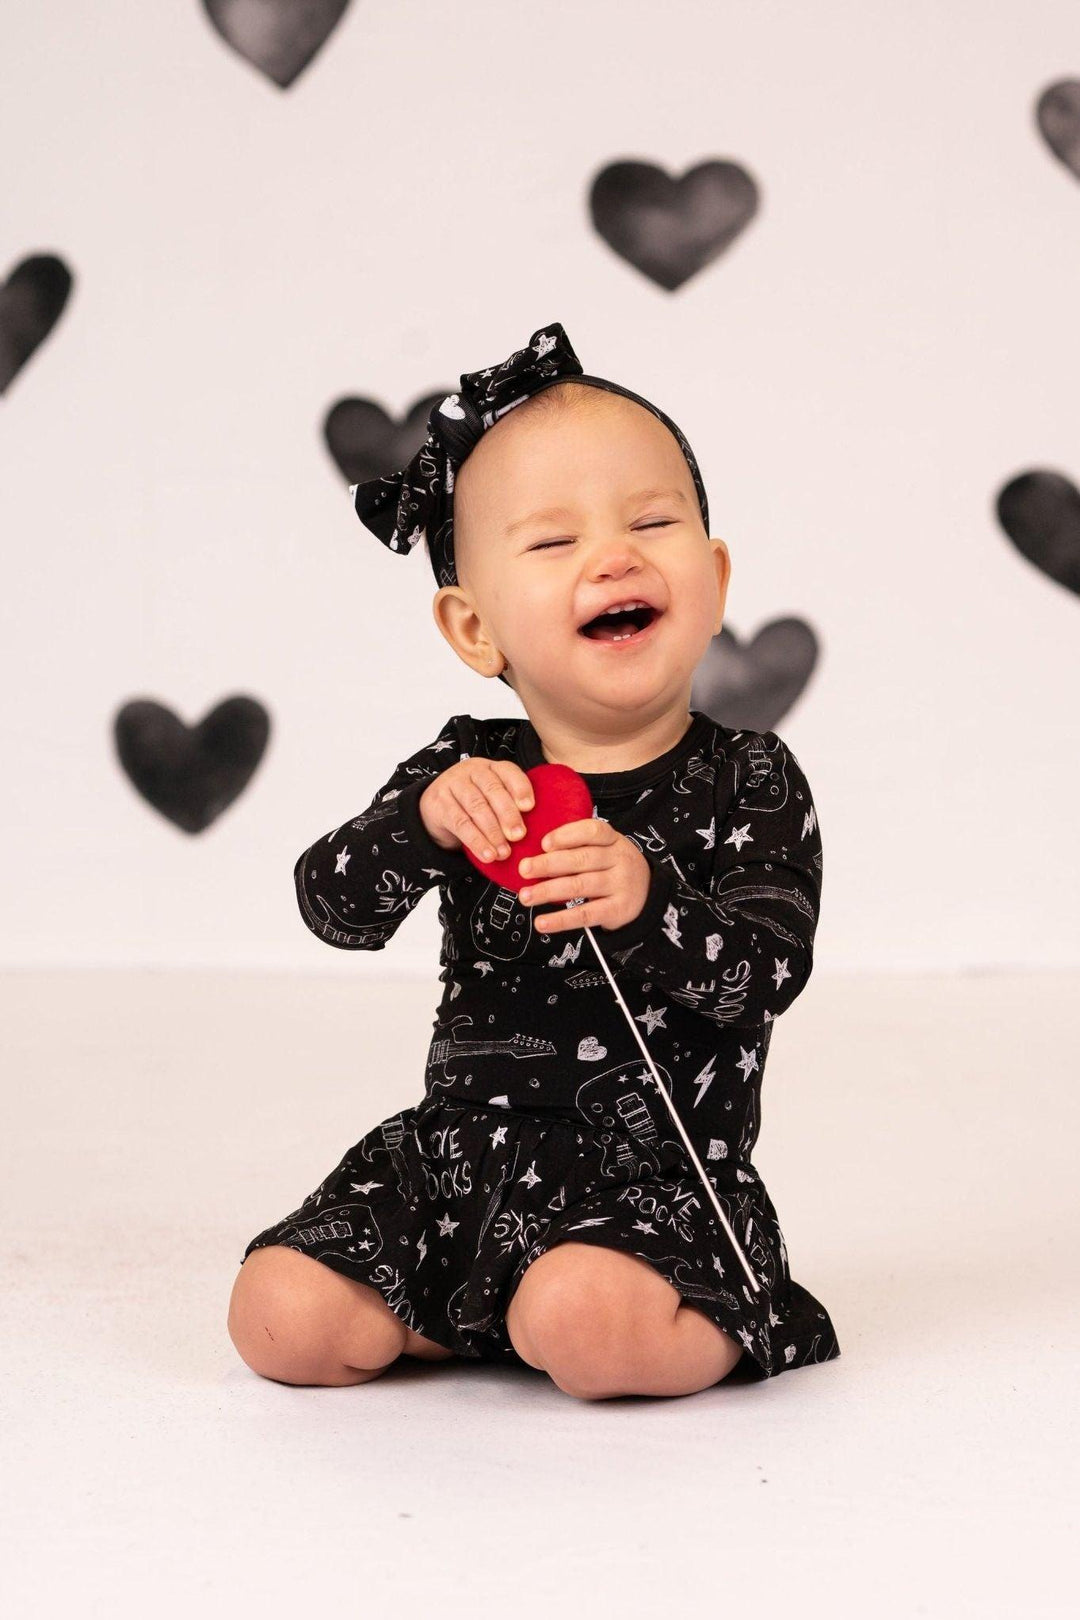 Valentine's 'Love Rocks' Bamboo Skirted Bodysuit Dress for Babies - Sophia Rose Children's Boutique